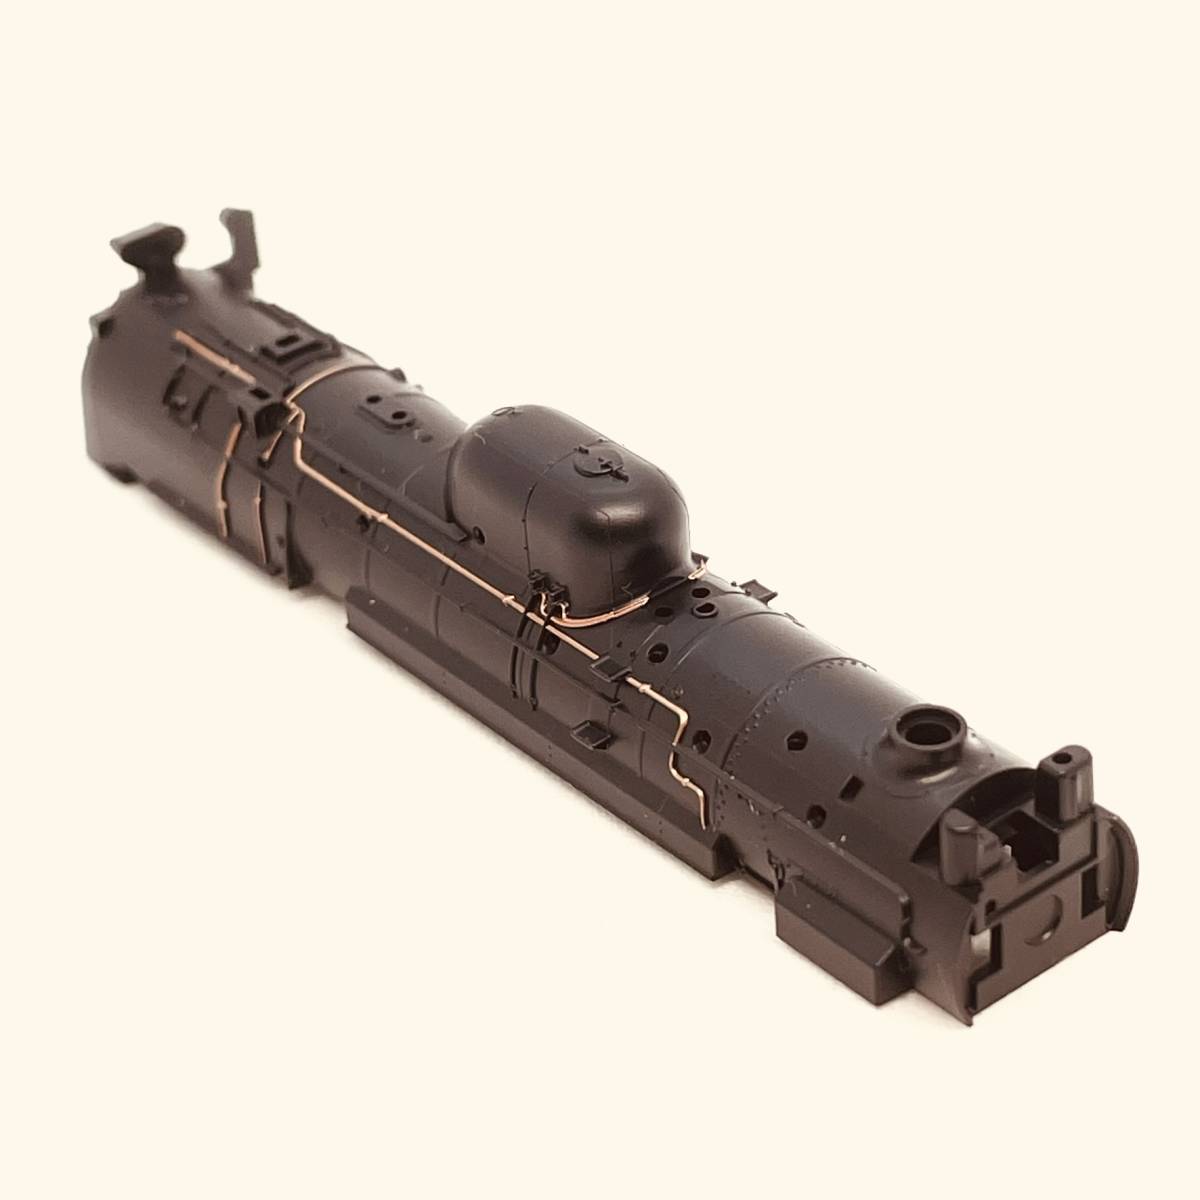 TOMIX C58 239用 ボイラー単体 1両分入り 2009 JR C58形蒸気機関車(239号機)からのバラシ_入札個数1でのお渡し内容です。